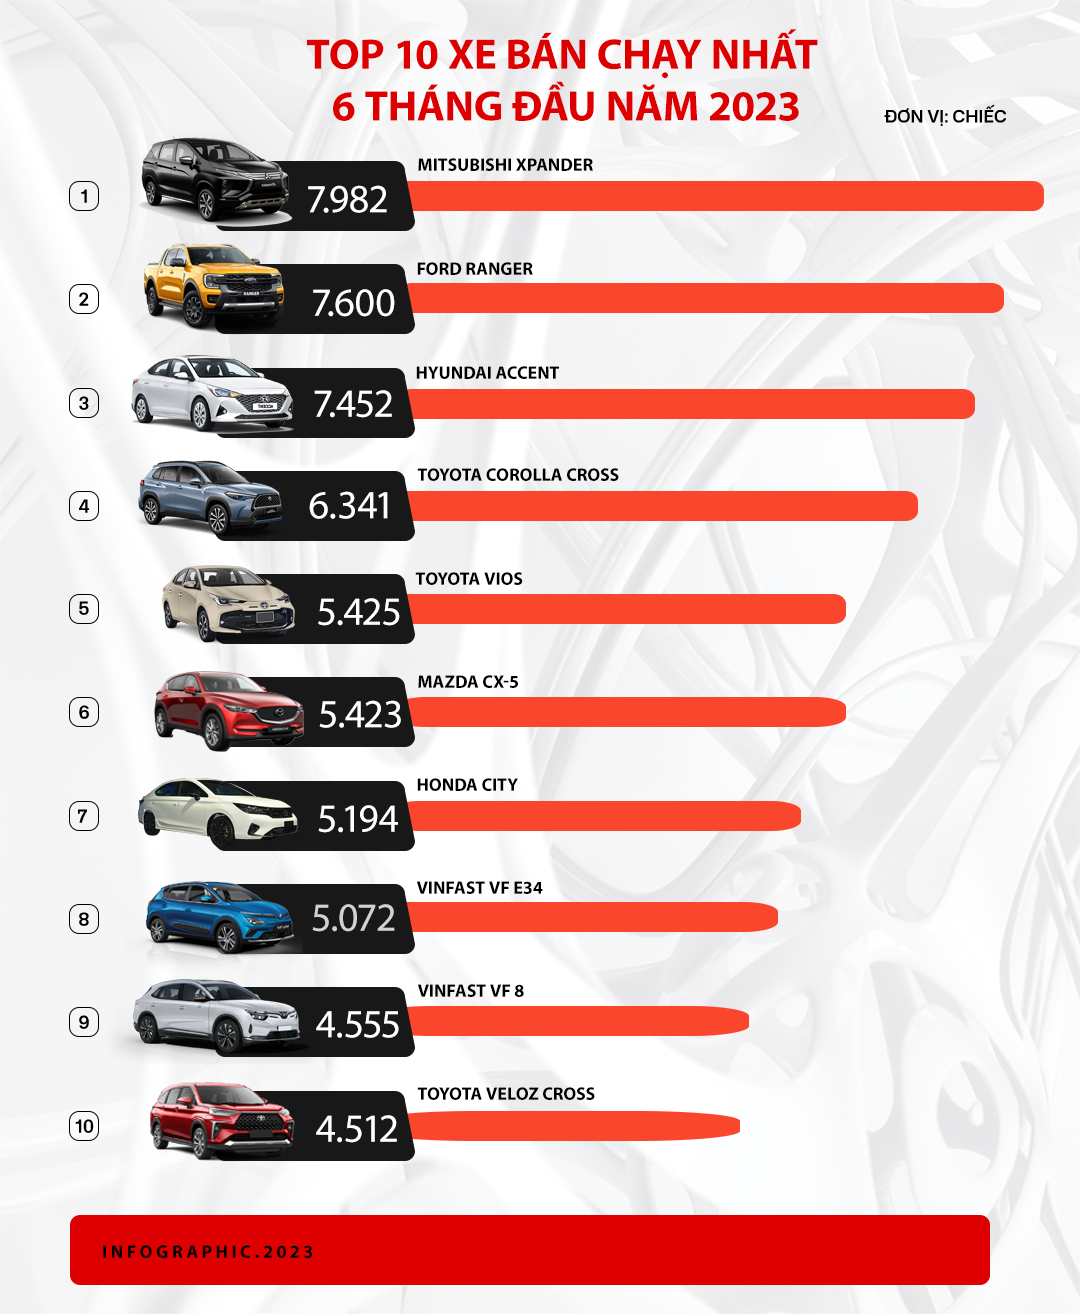 Mitsubishi Xpander bán chạy nhất Việt Nam và 9 ông vua doanh số từng phân khúc nửa đầu 2023 - Ảnh 1.